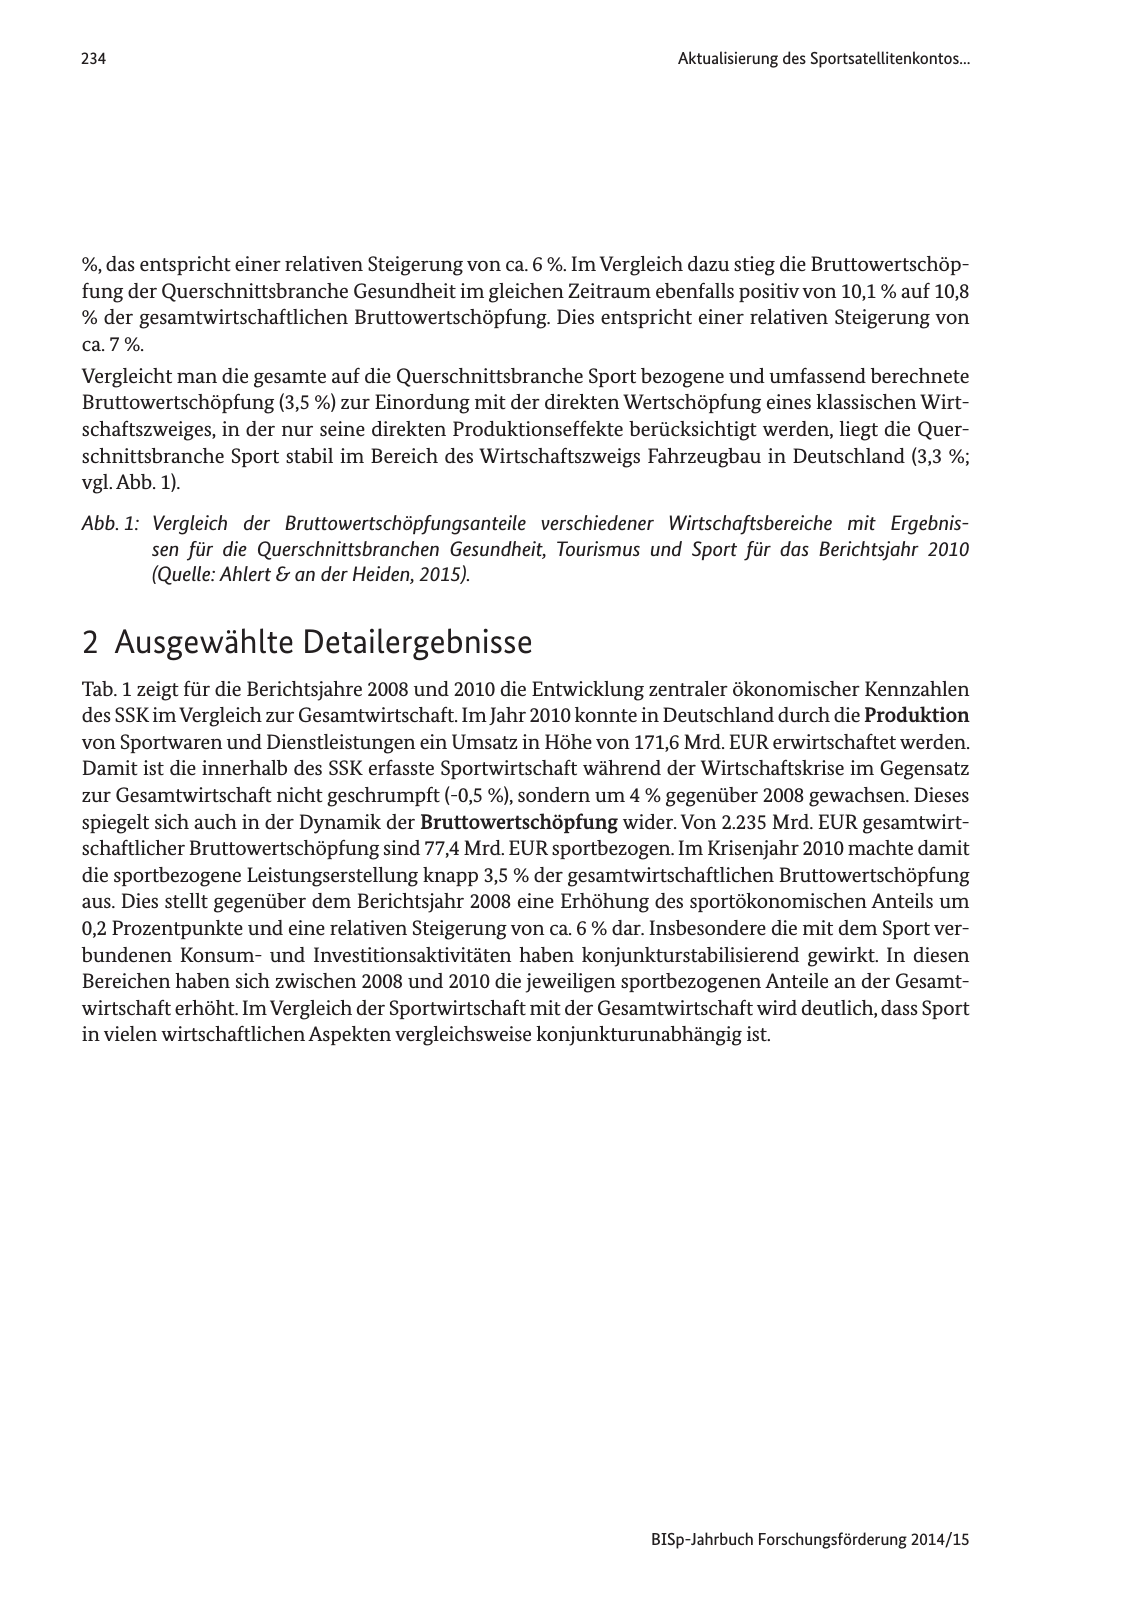 Vorschau Jahrbuch 2014/15 Seite 235